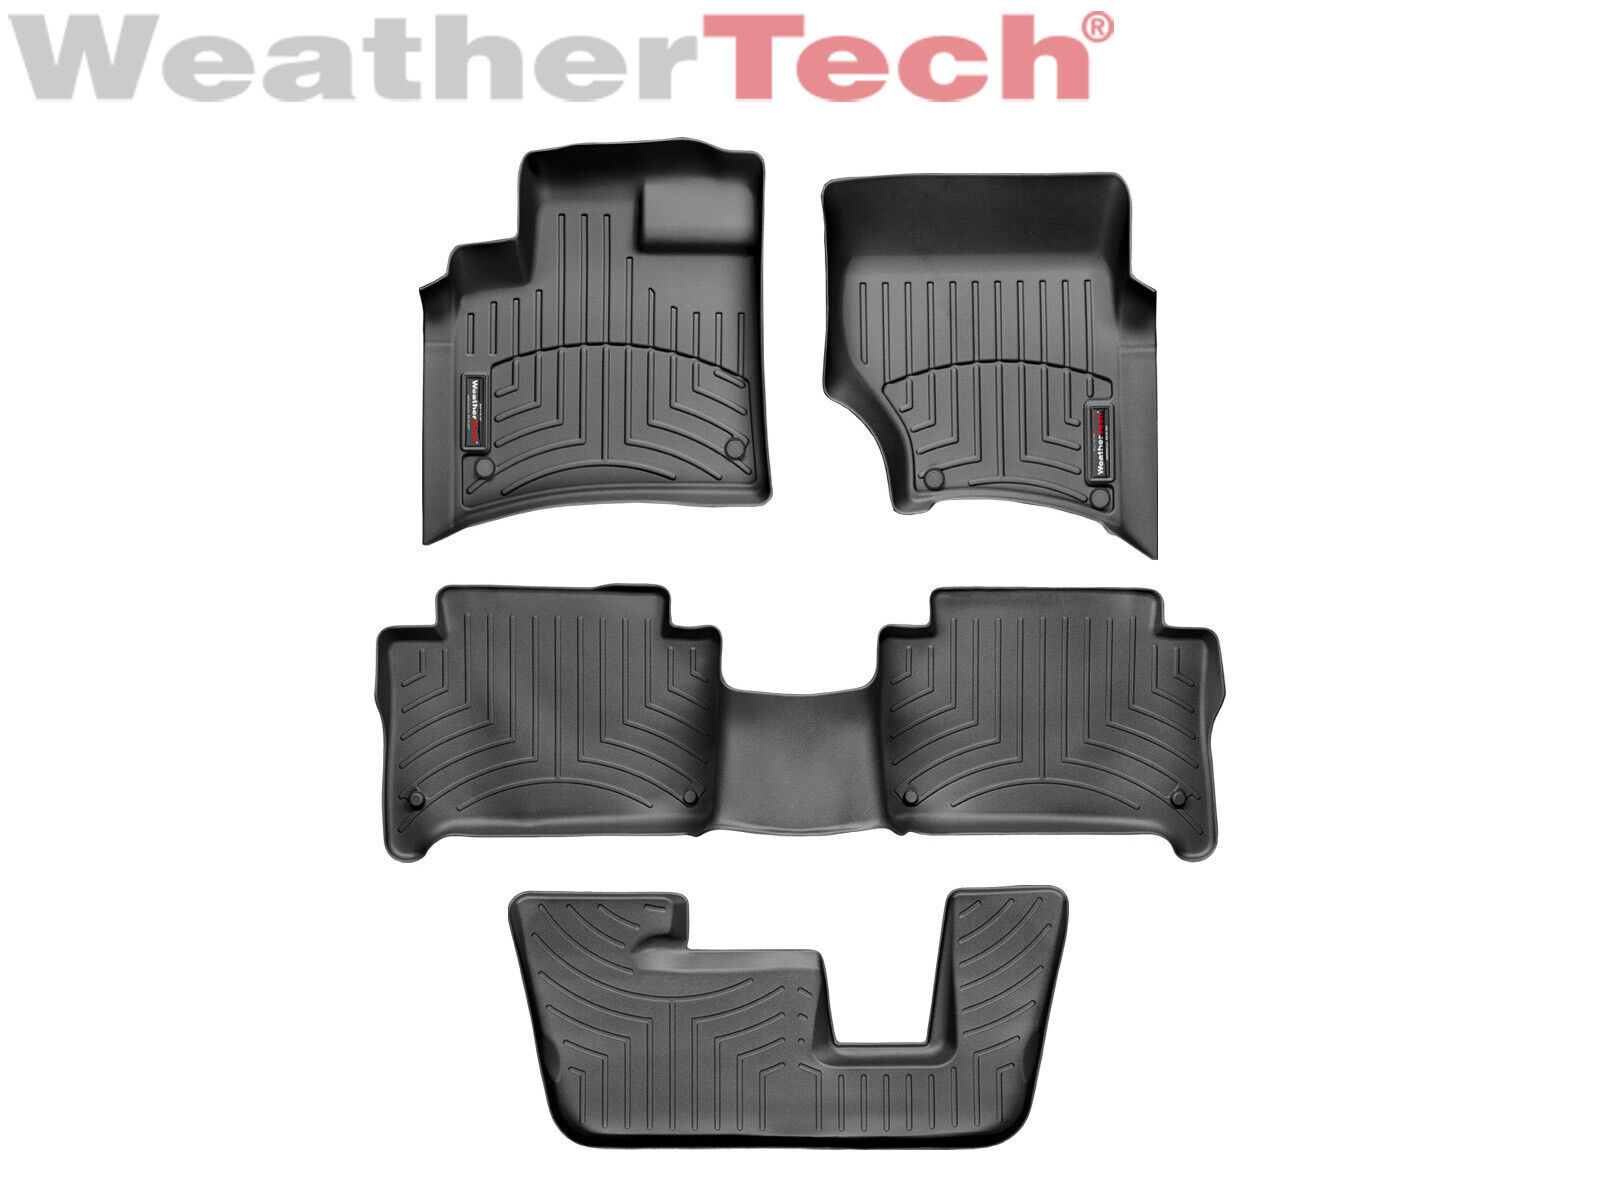 WeatherTech DigitalFit FloorLiner Floor Mats for Audi Q7 - 2007-2015 - Black